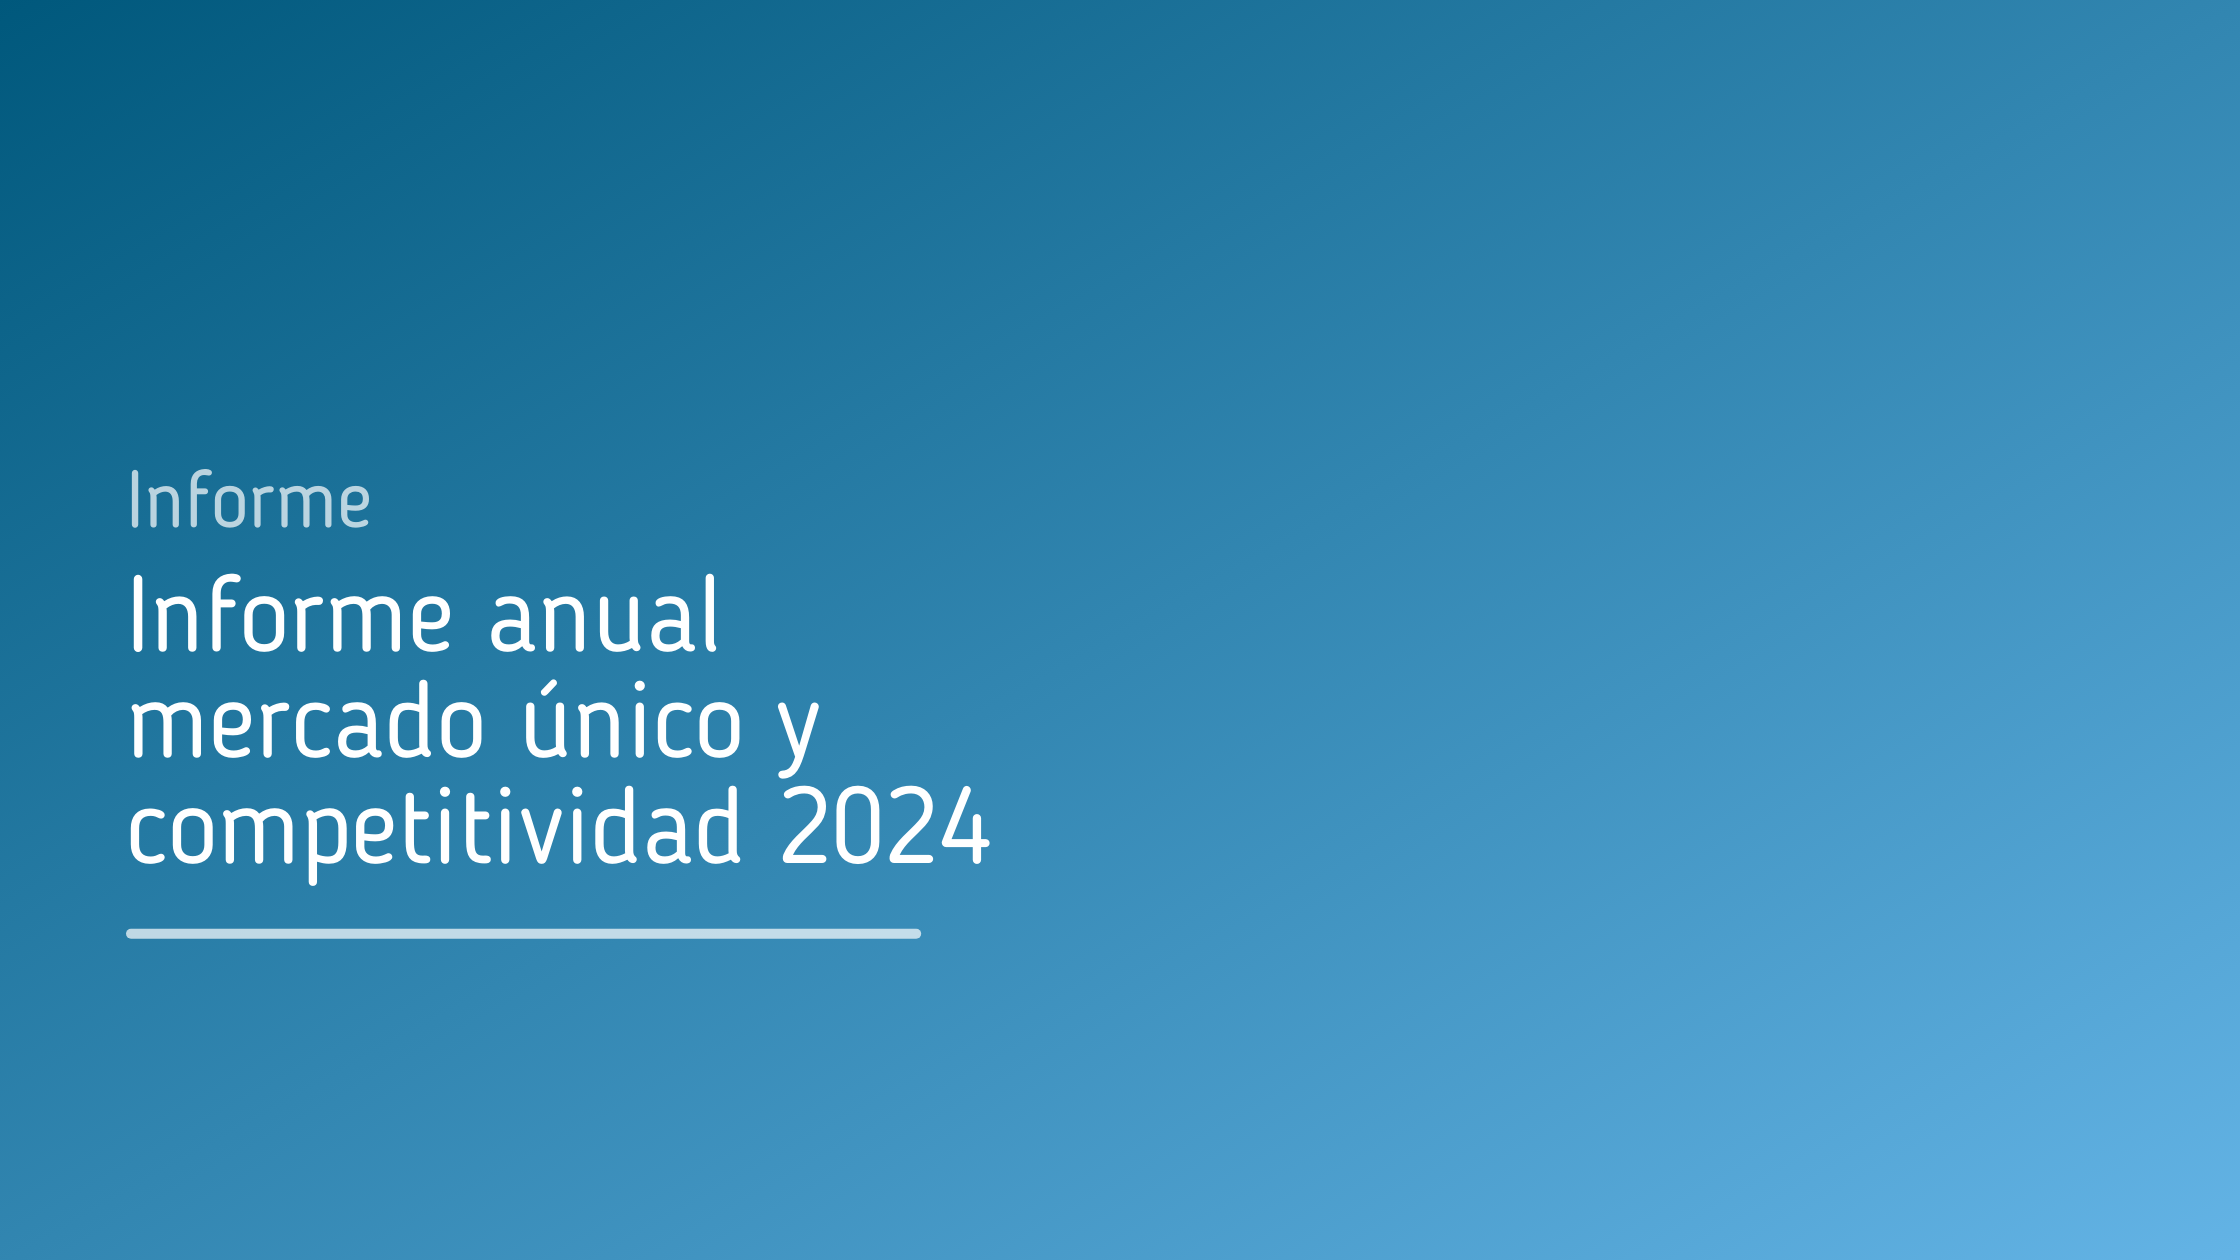 Informe_anual_mercado_único_y_competitividad_2024